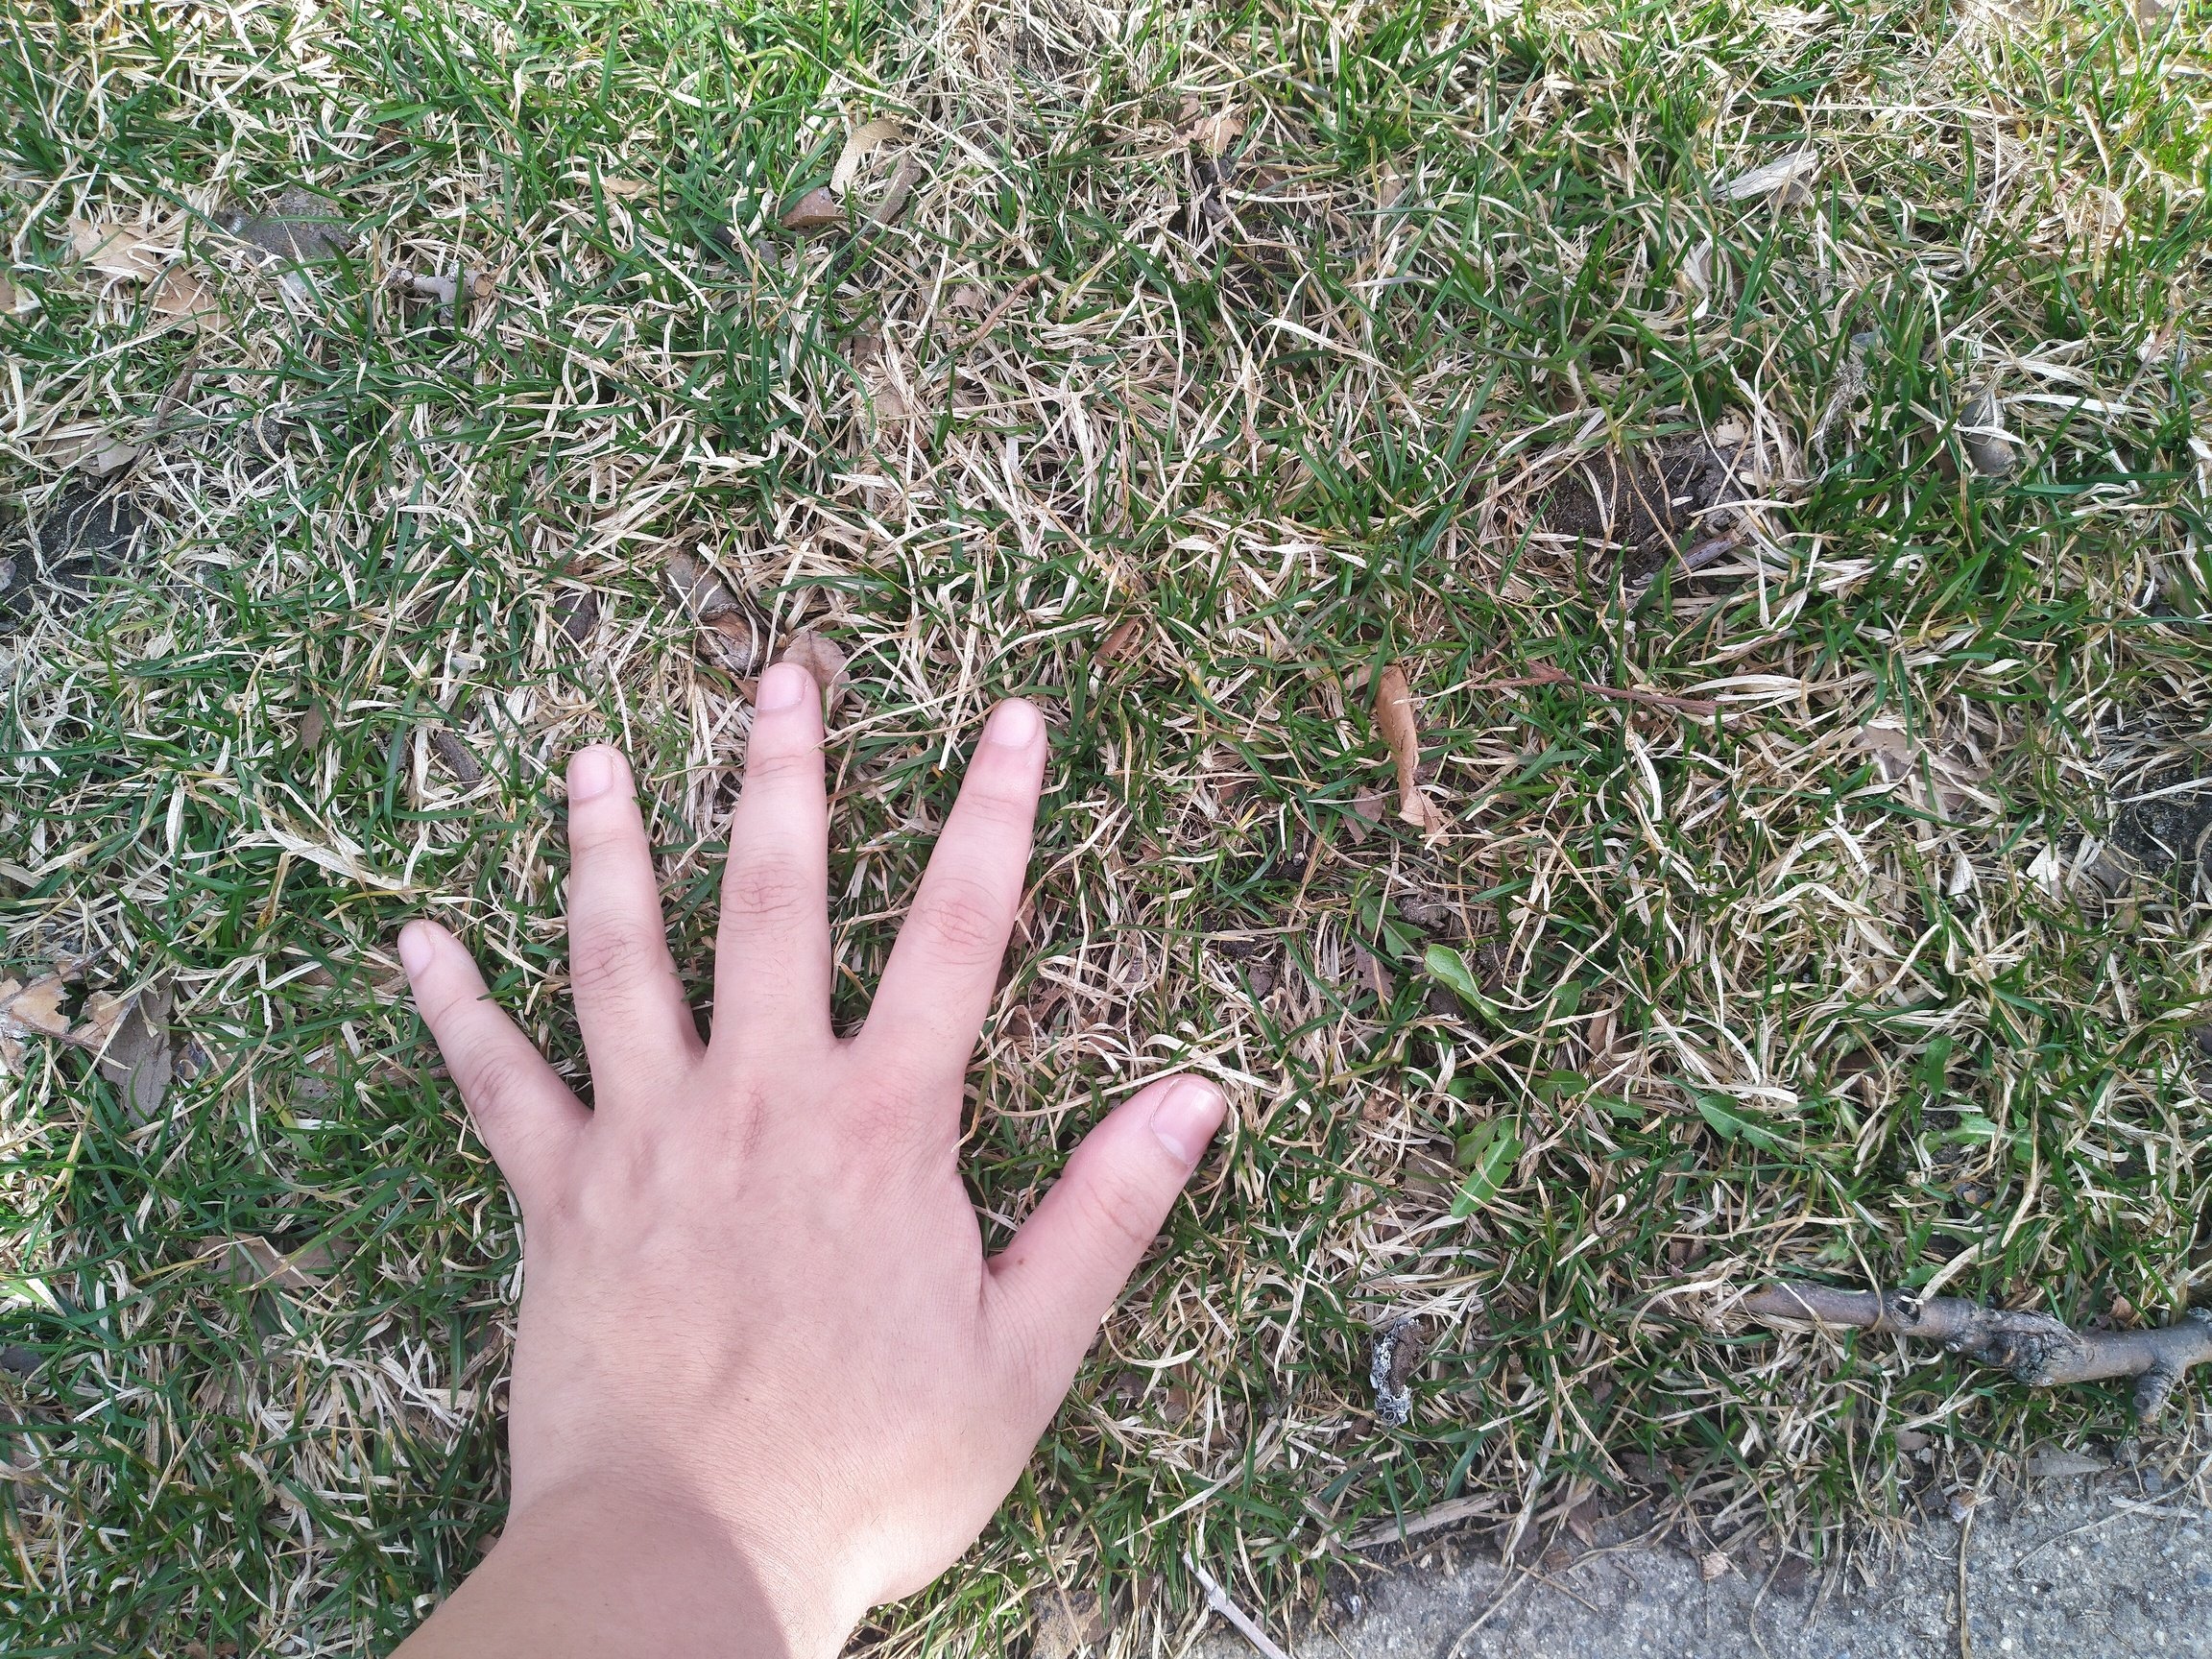 a hand on grass